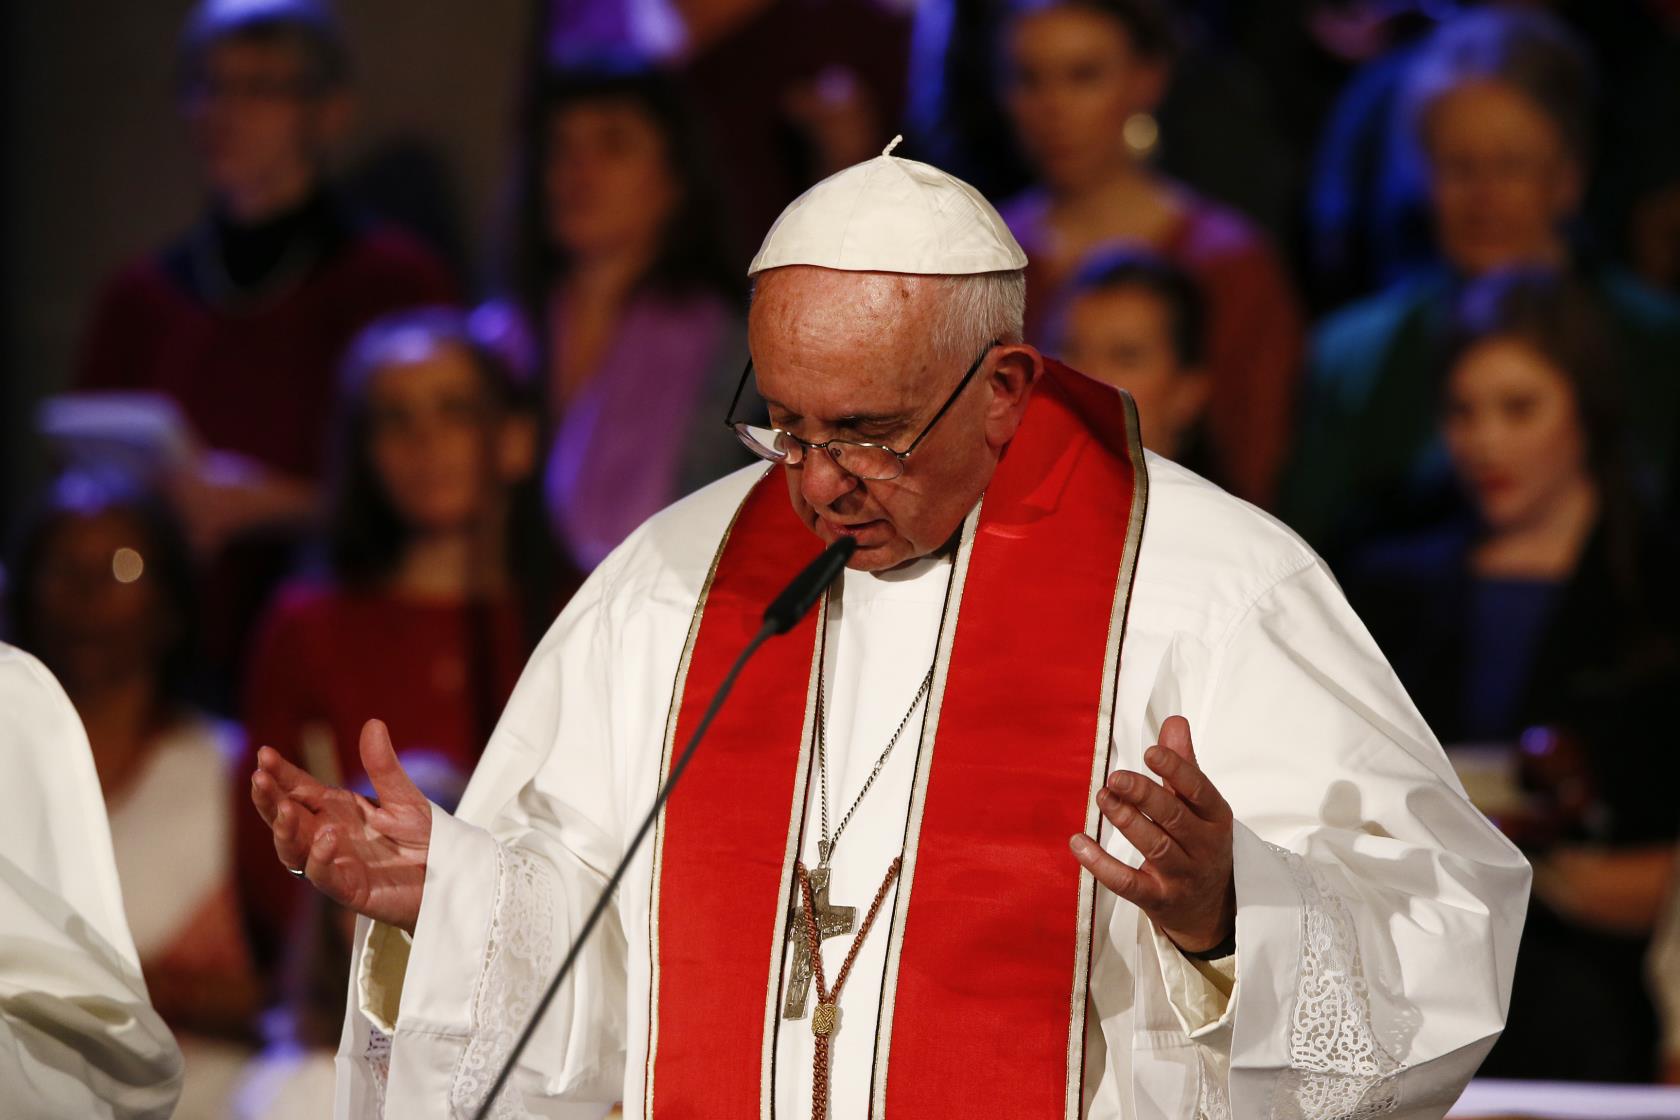 Påve Franciskus står med öpnade händer och säger något i en mikrofon.